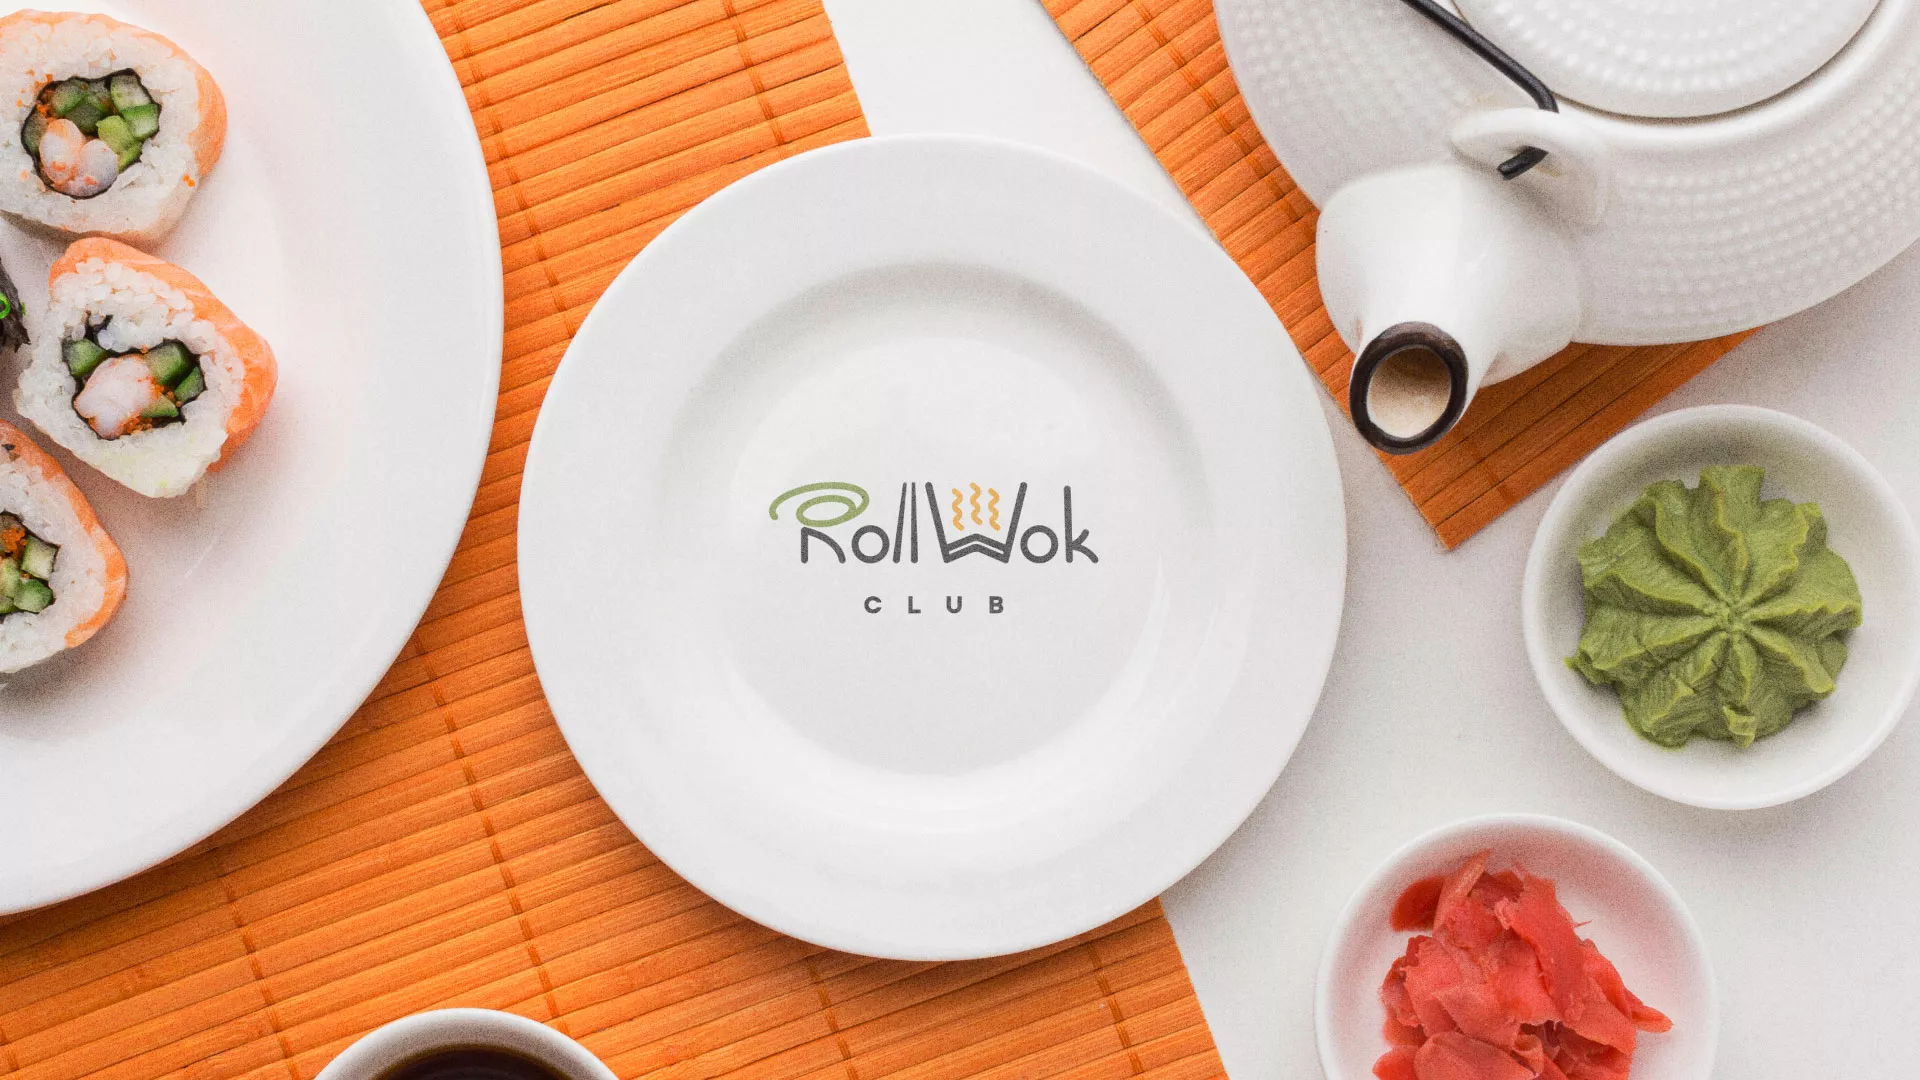 Разработка логотипа и фирменного стиля суши-бара «Roll Wok Club» в Вязьме